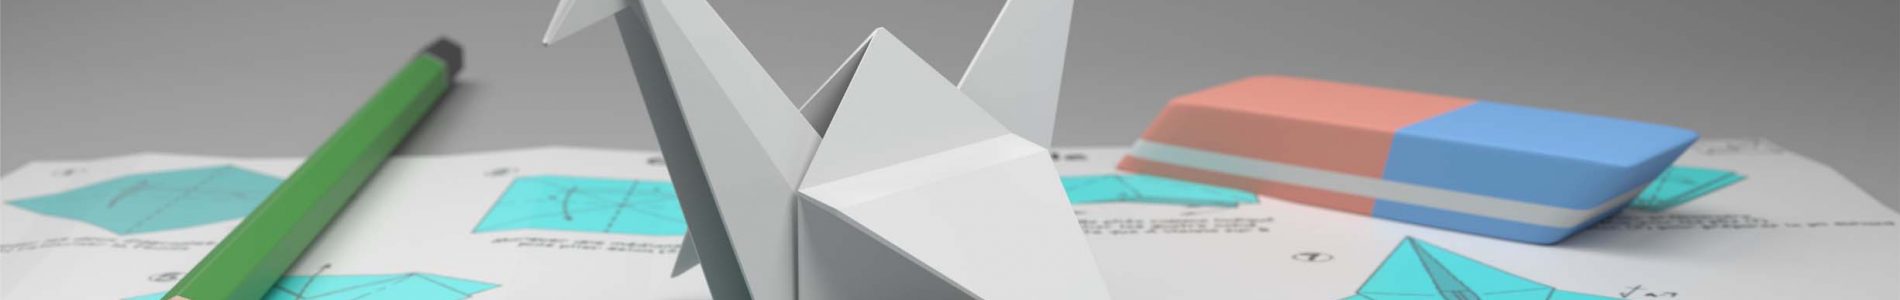 origami-2532622 - Copia